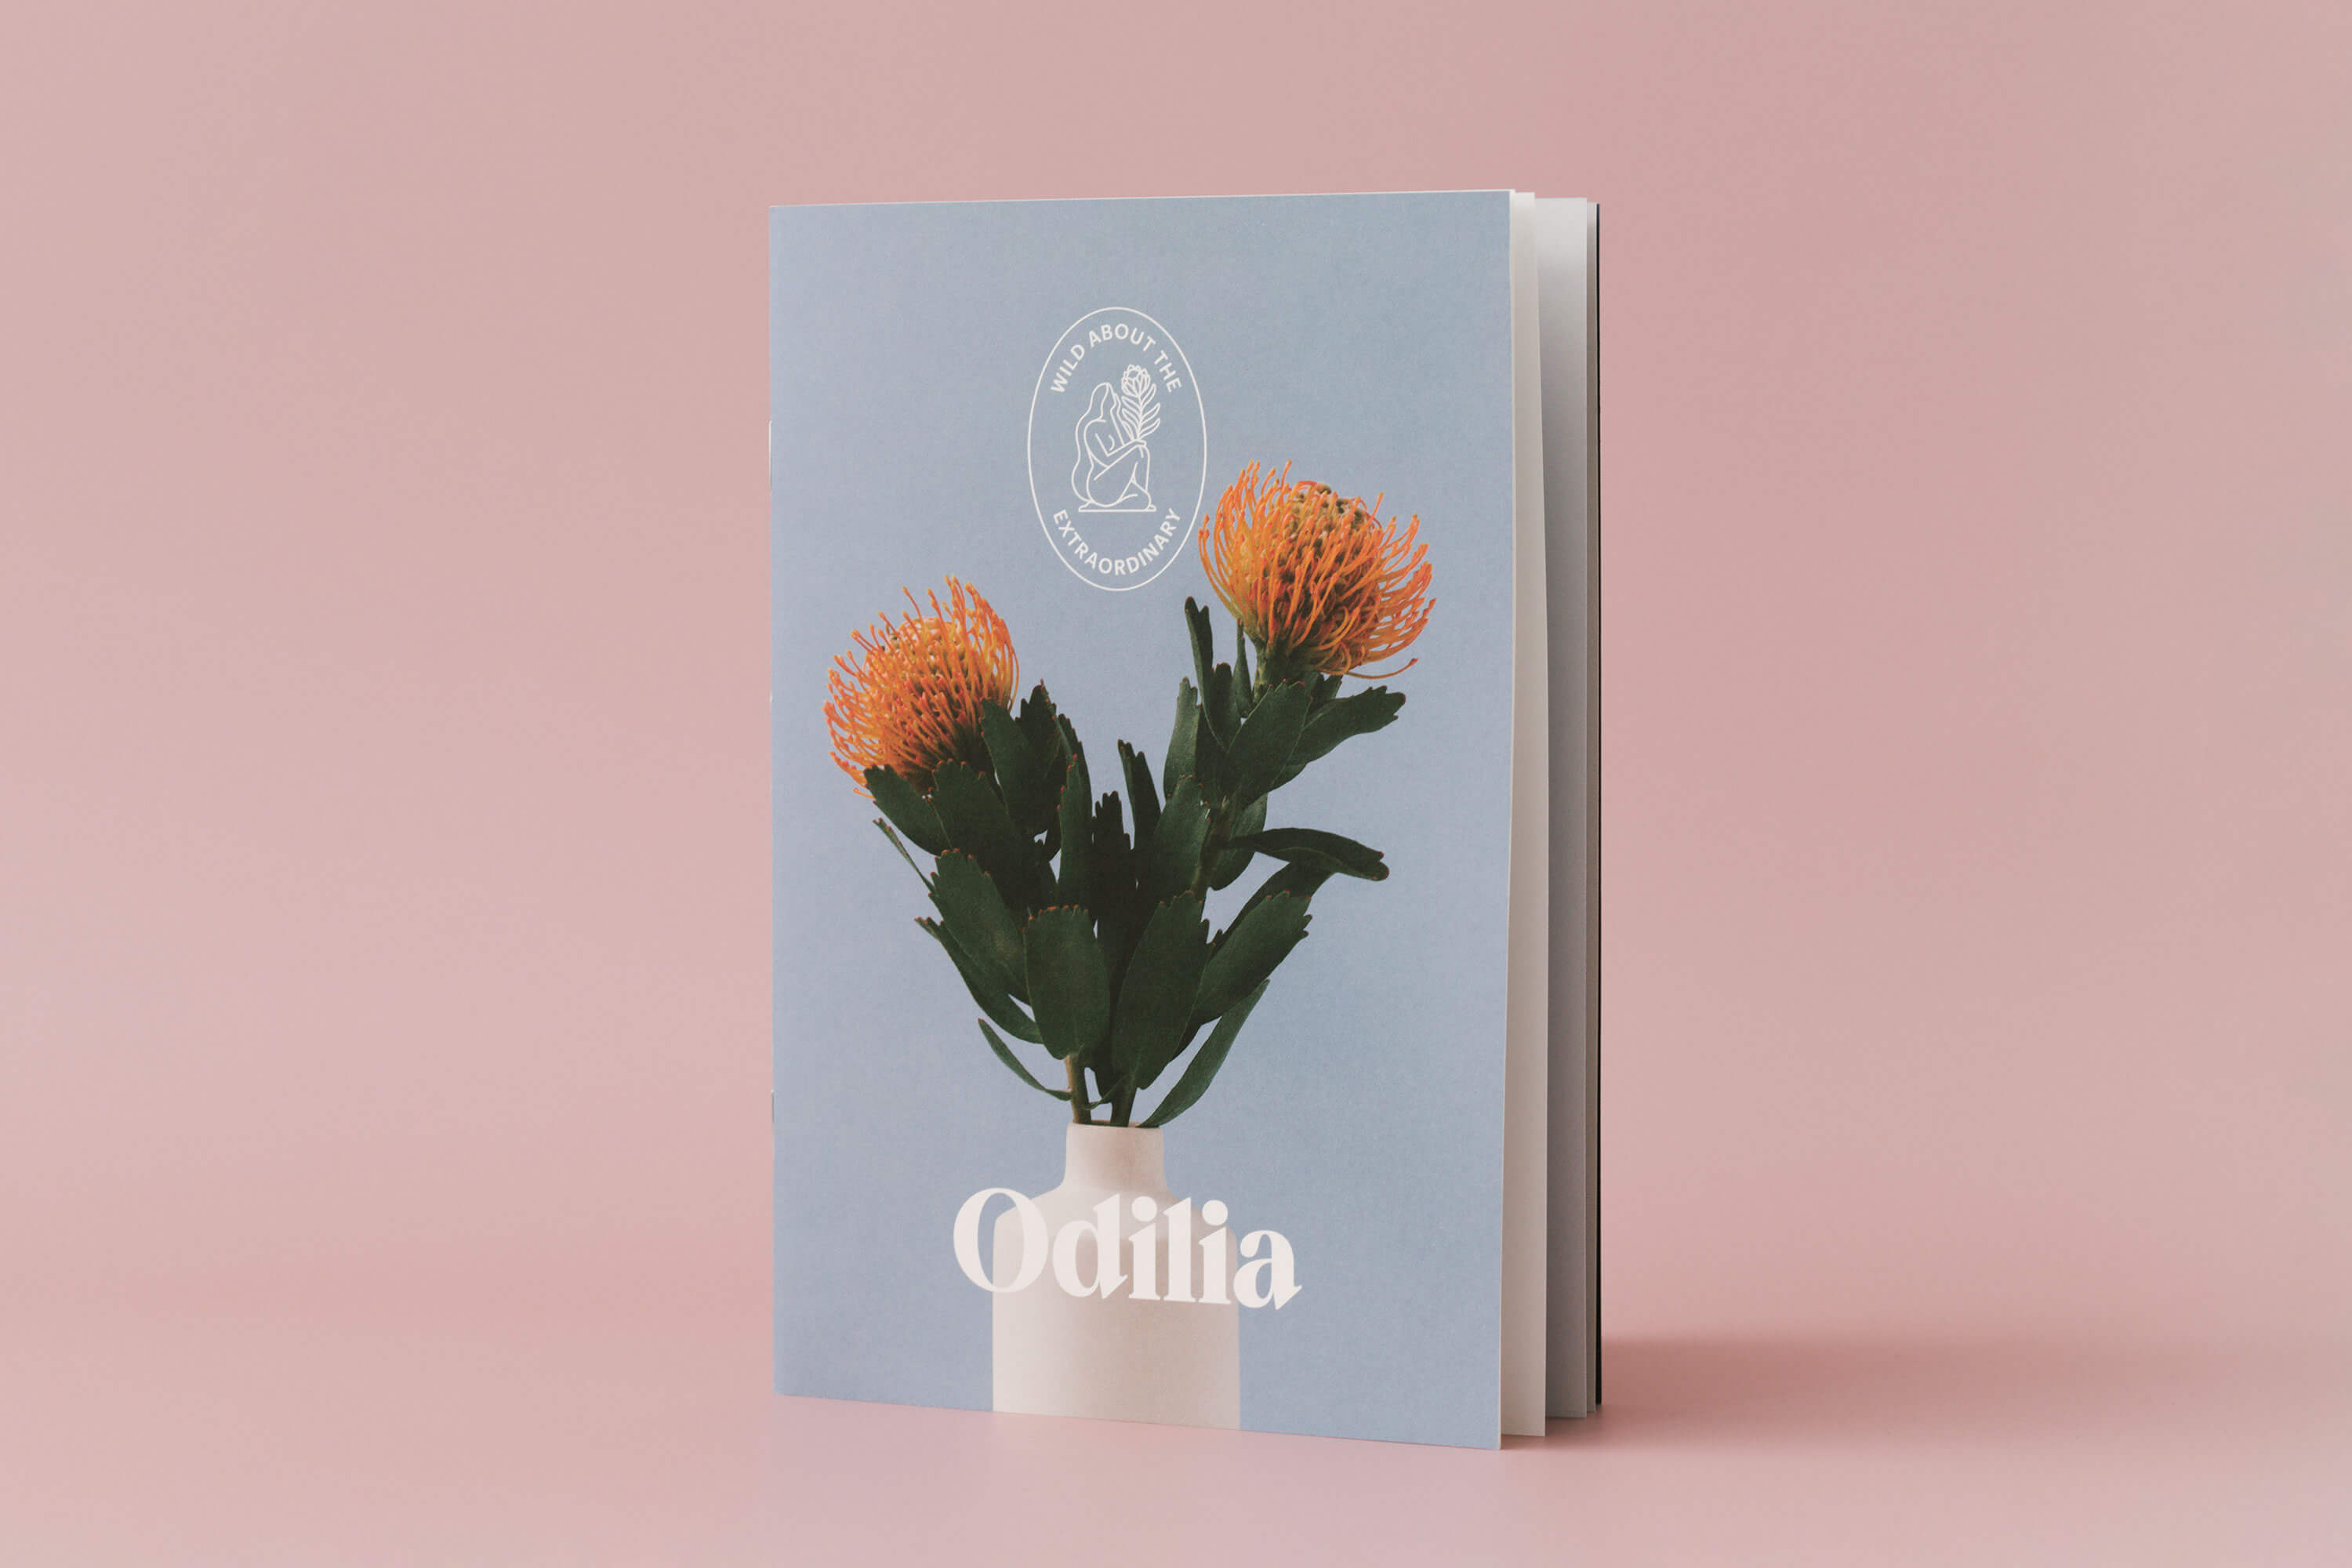 odilia-booklet-closed